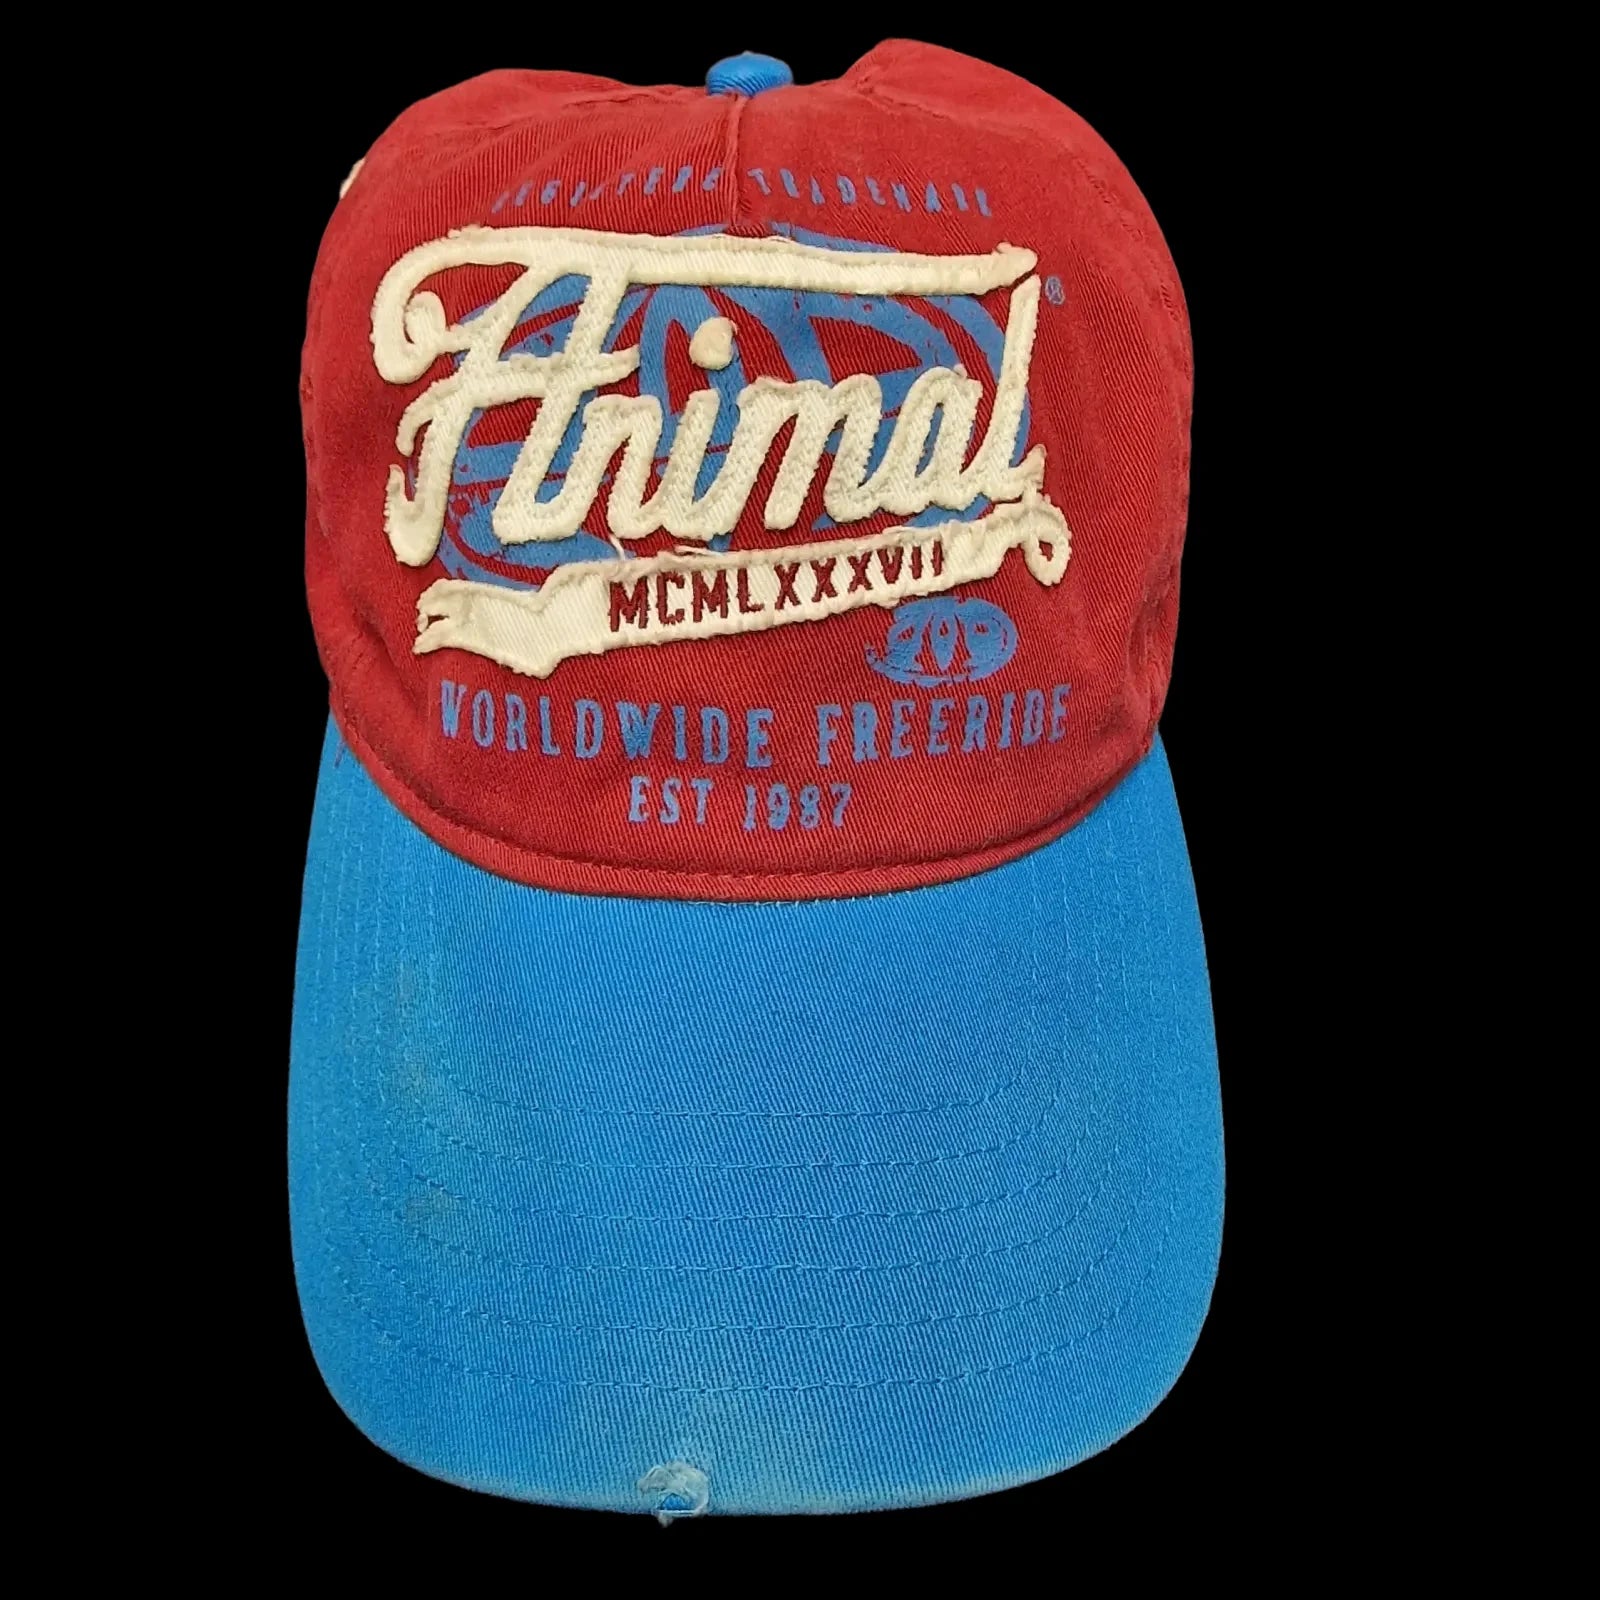 Vintage Animal Worldwide Freeride Blue Red Cap - Hats